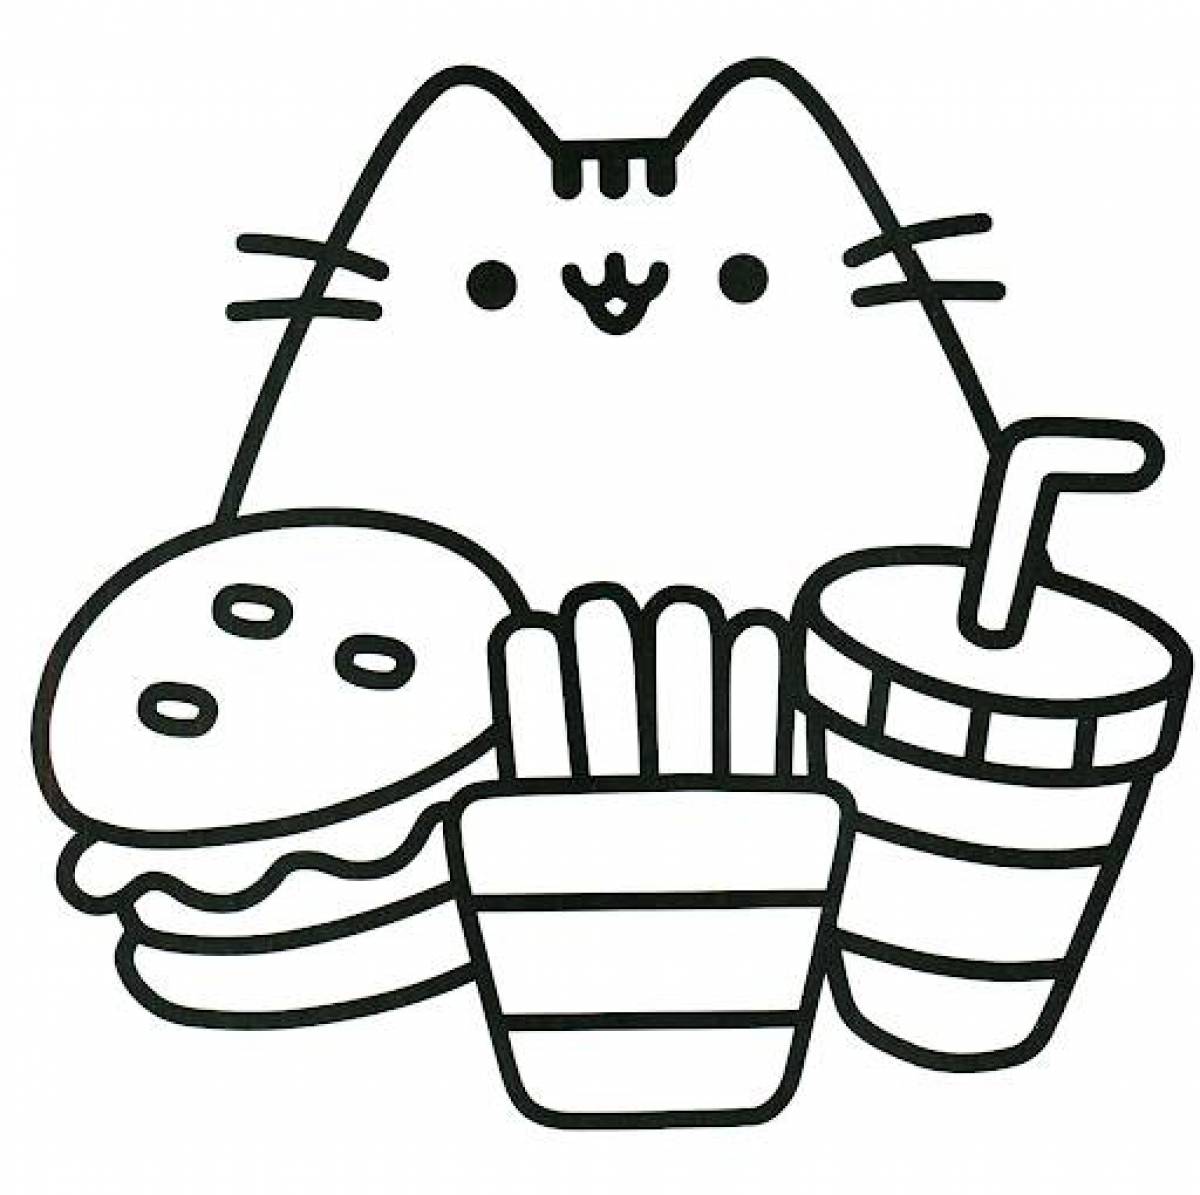 Котик с едой